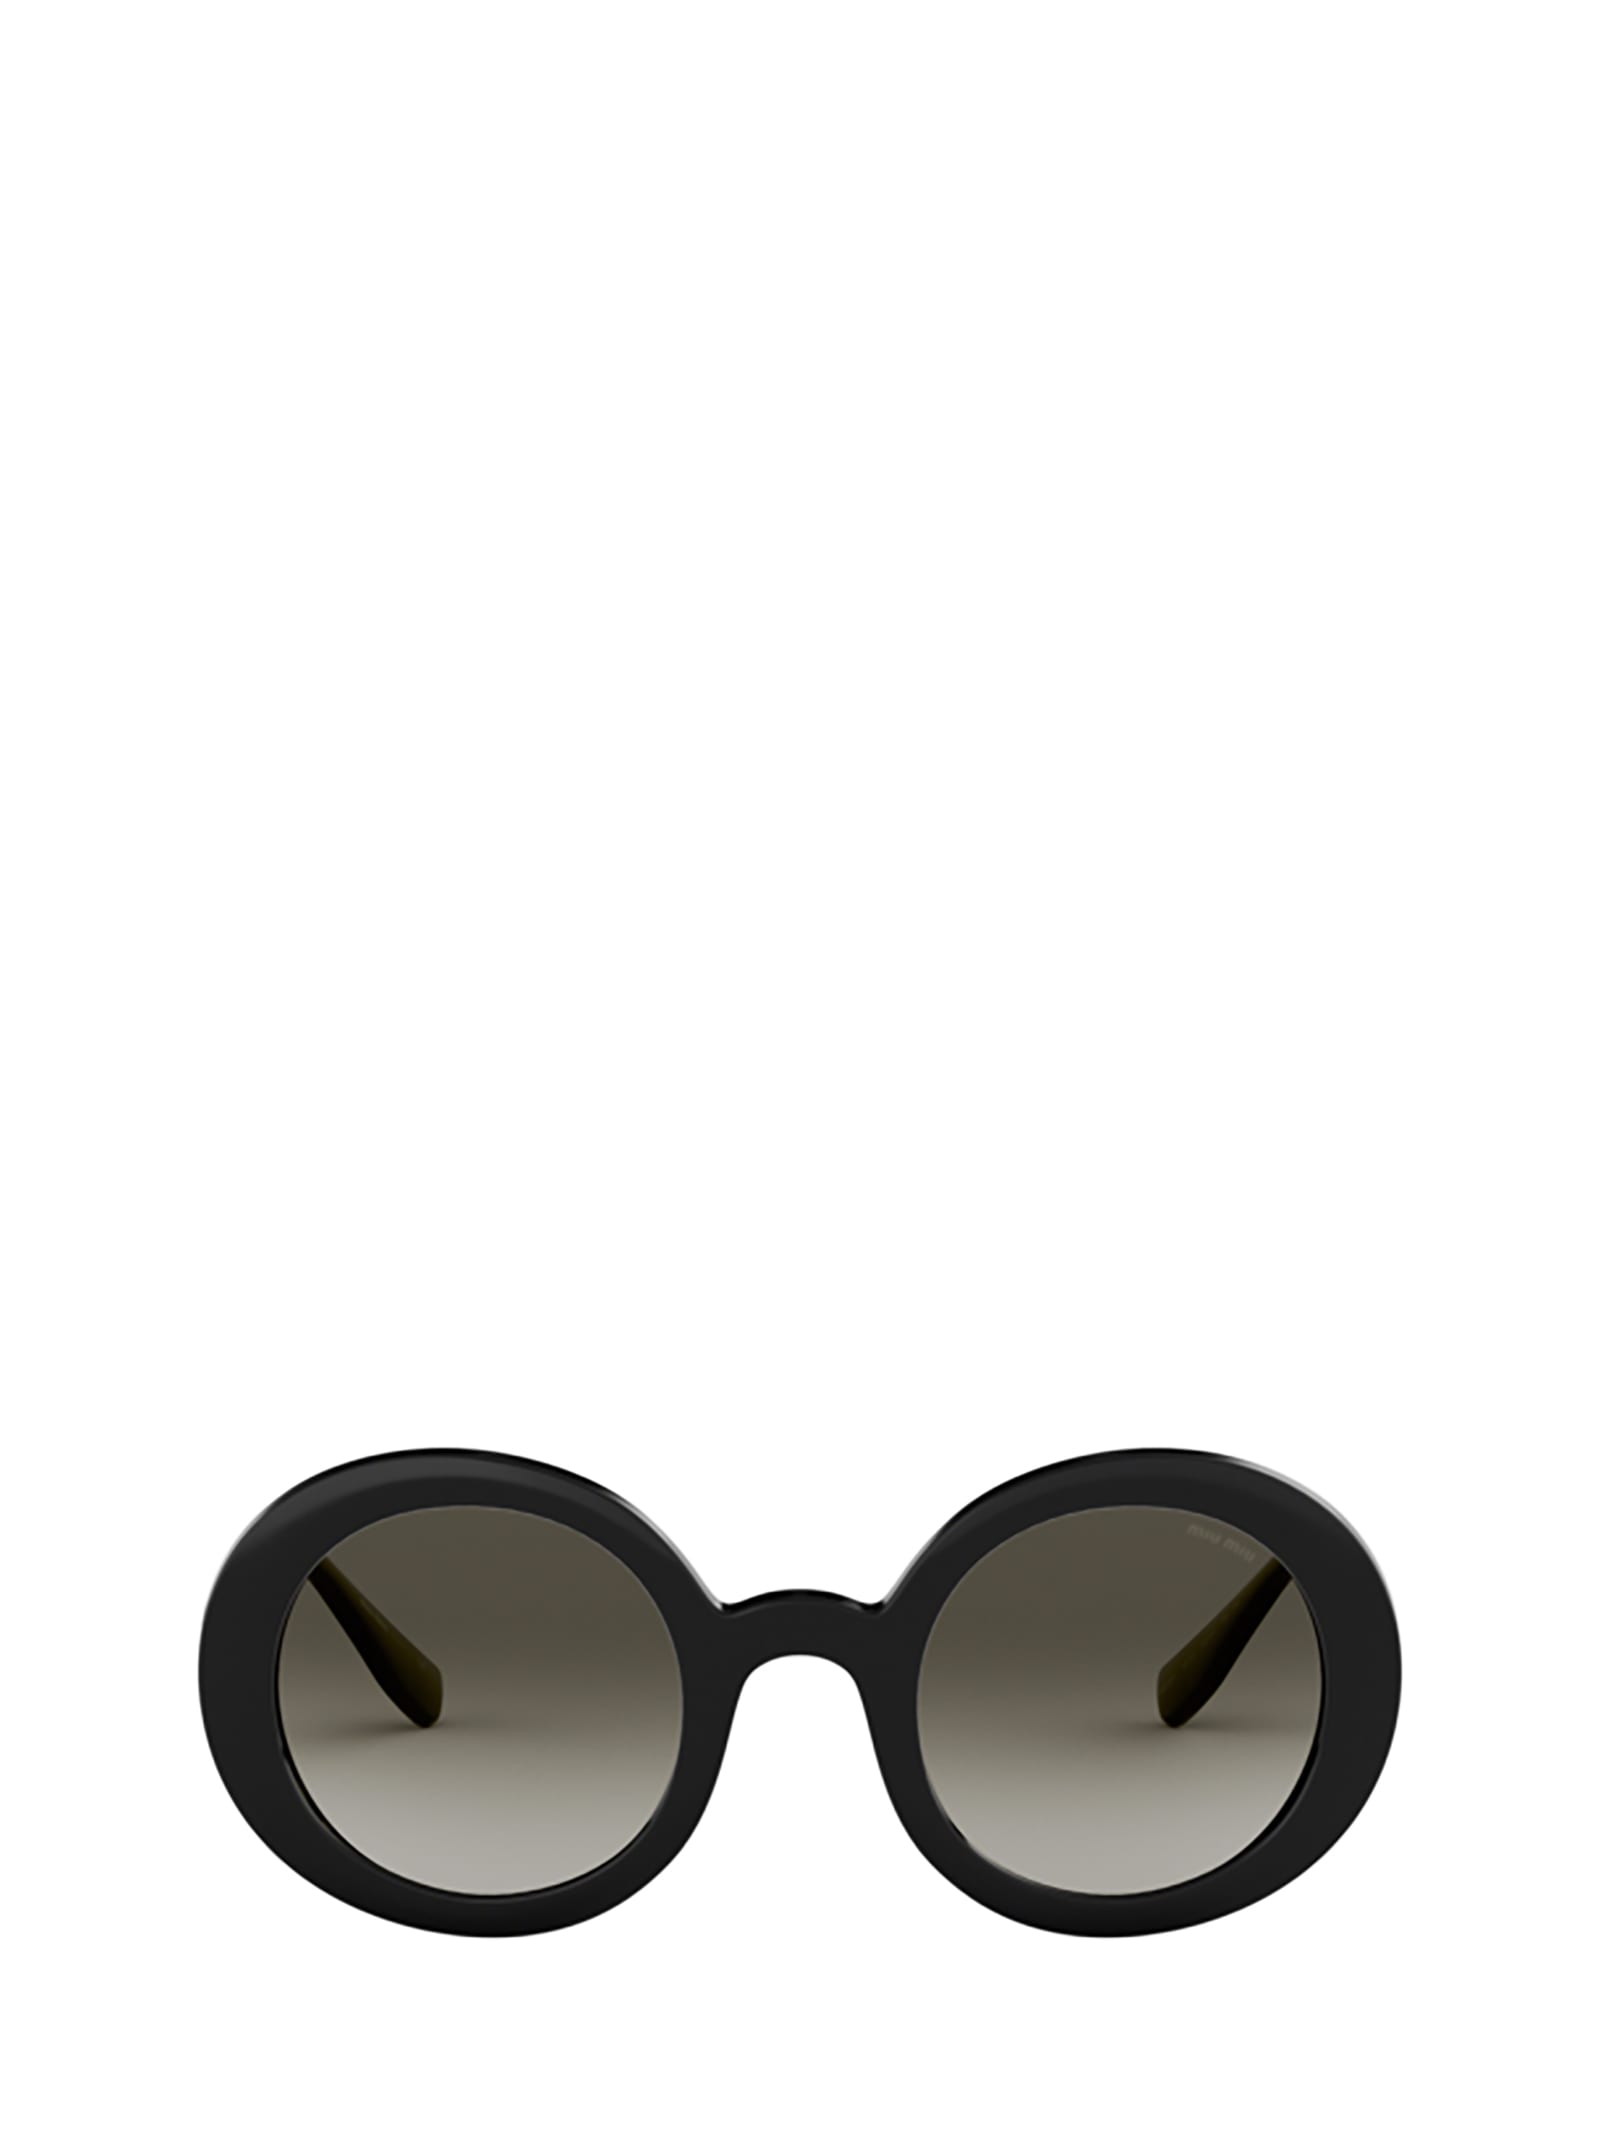 Miu Miu Eyewear Miu Miu Mu 06us Black Sunglasses